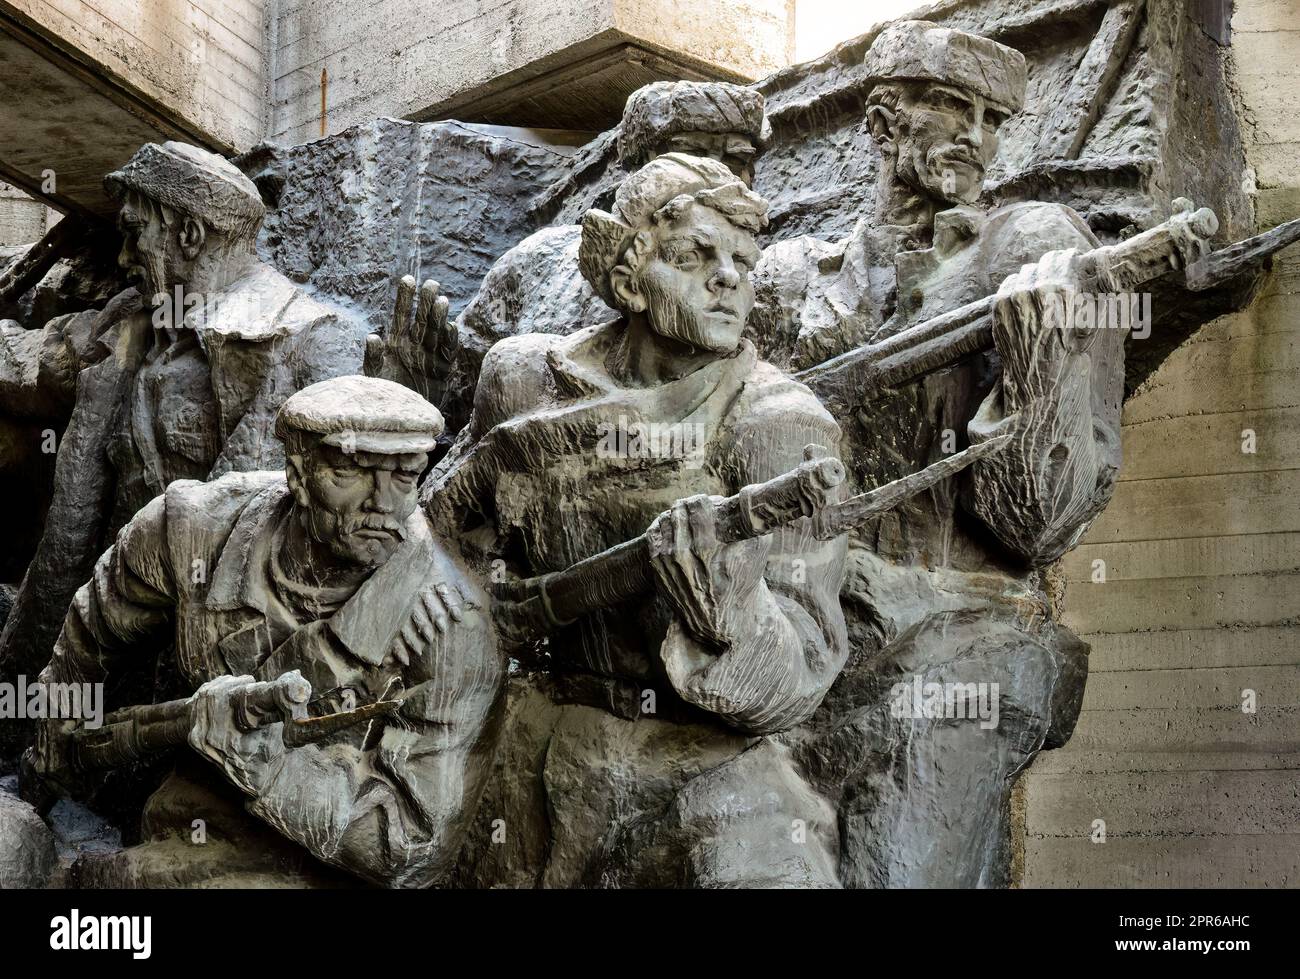 WW2 memorial in Kiev - Ukraine Stock Photo